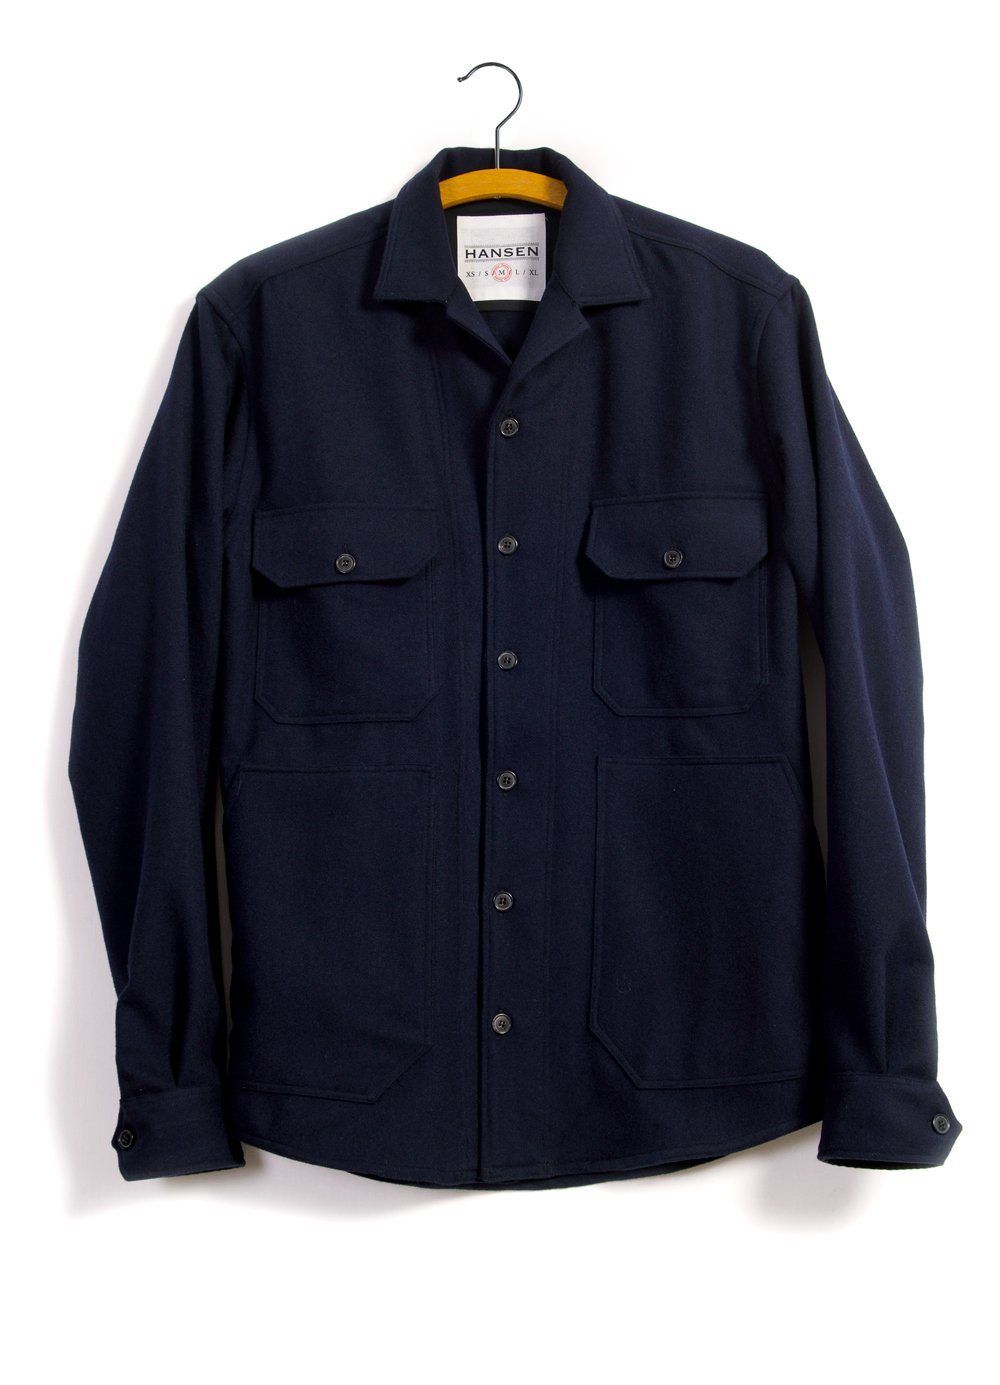 HANSEN Garments - STEFAN | Worker Over Shirt | Navy - HANSEN Garments